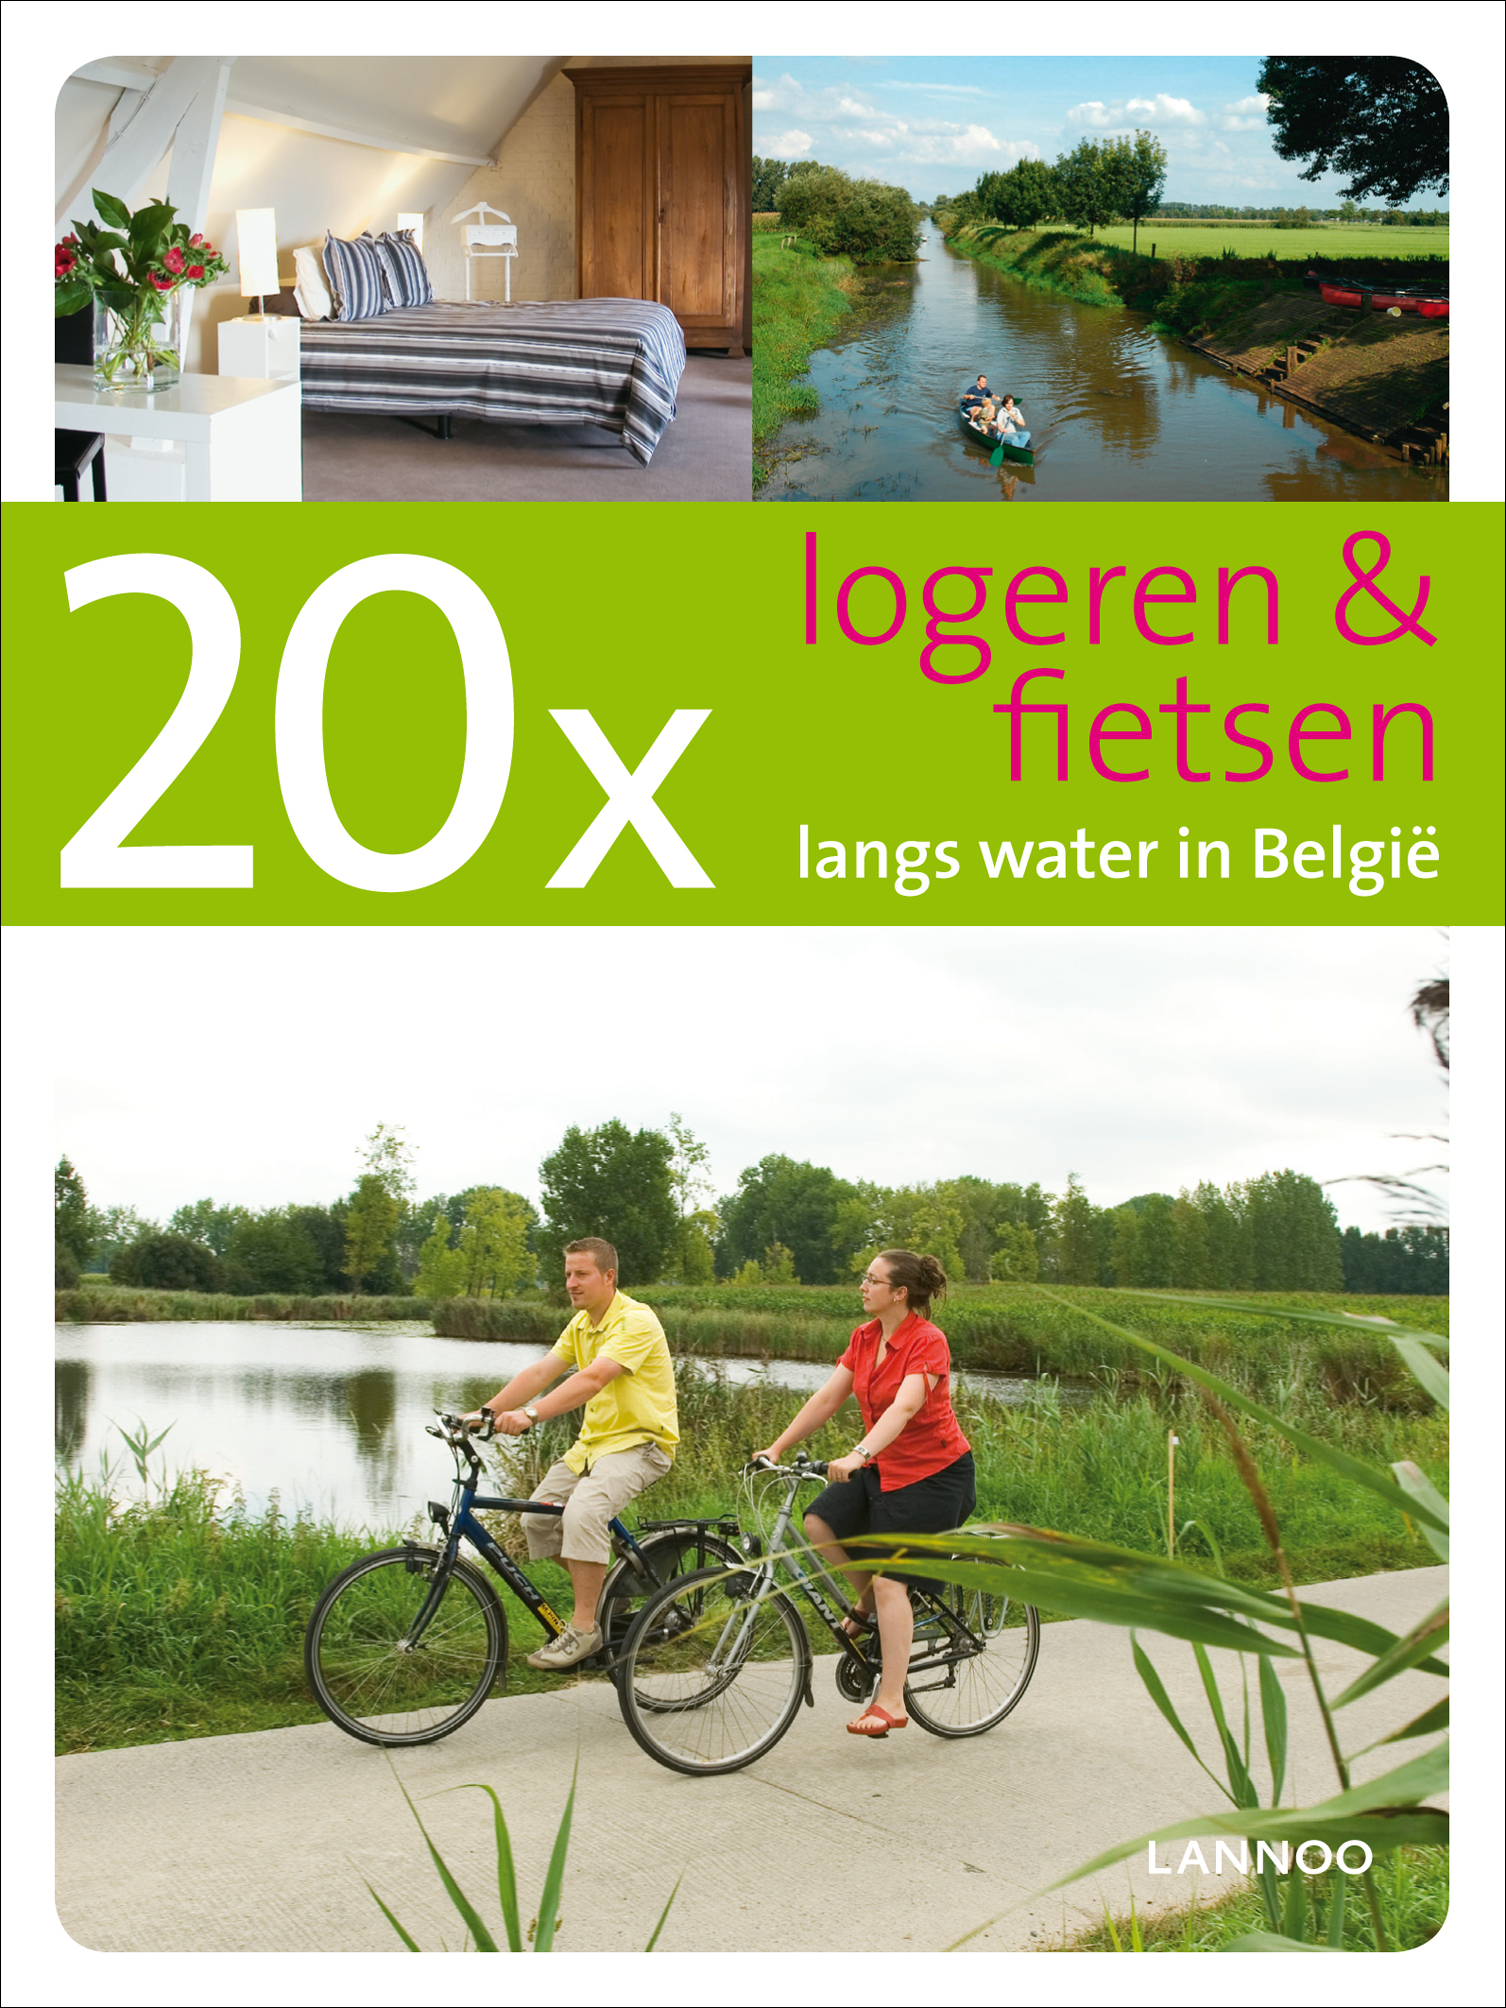 20 x & fietsen langs water België | LannooCampus Nederland